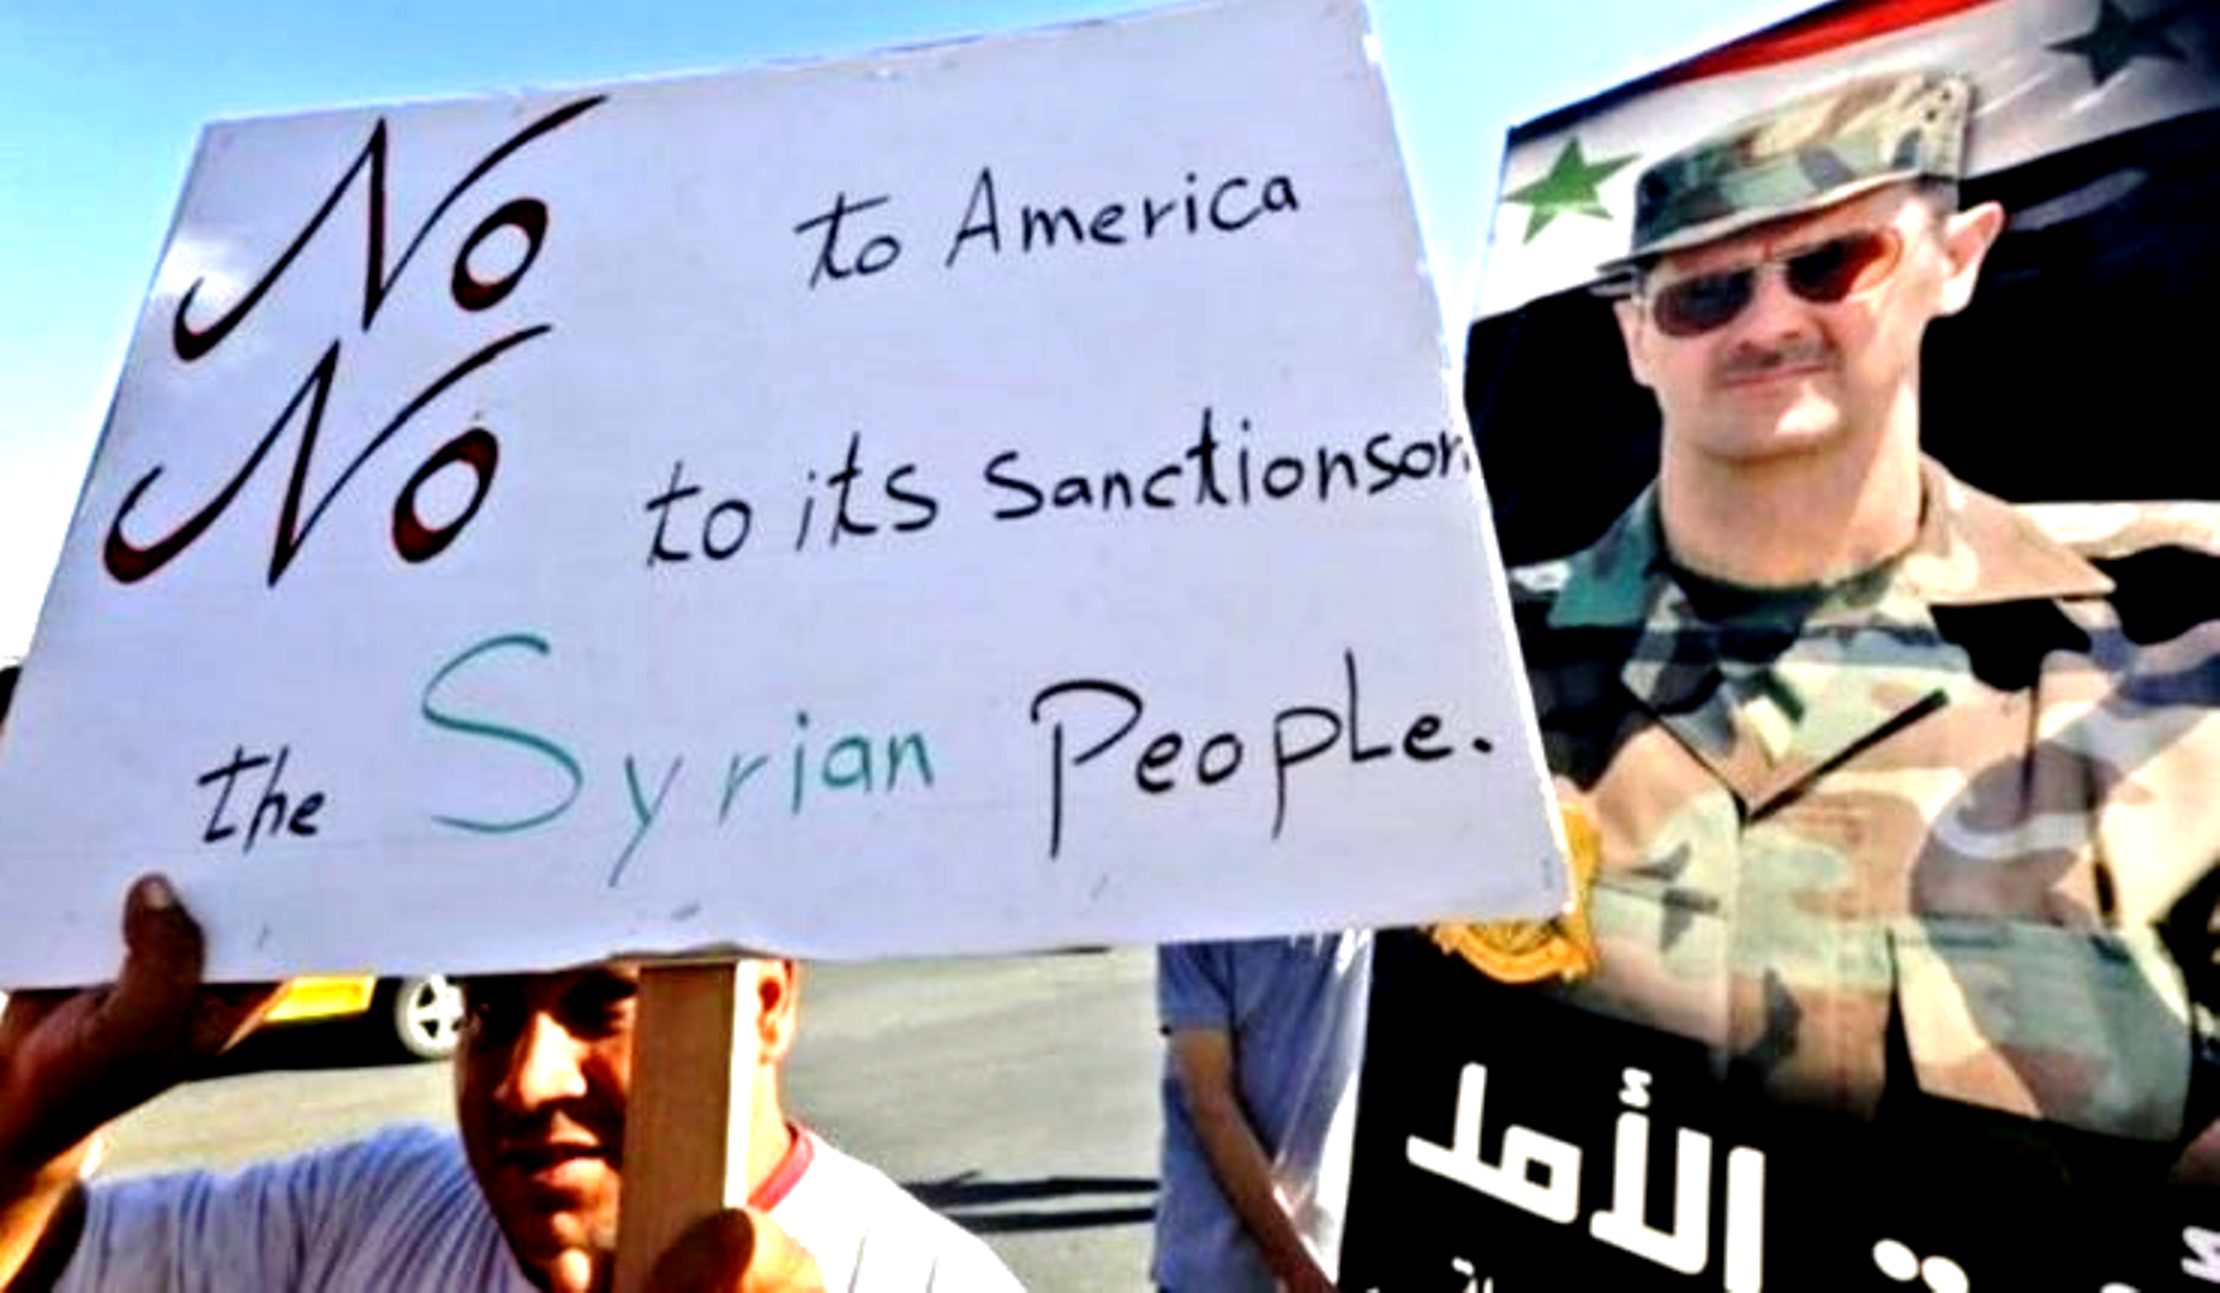 Συρία, Λίβανος: Η σύγκρουση μεταξύ των δύο εξισώσεων: «Να φύγετε ή θα σας σκοτώσουμε» εναντίον «Συνθηκολογήστε ή θα σας σκοτώσουμε»